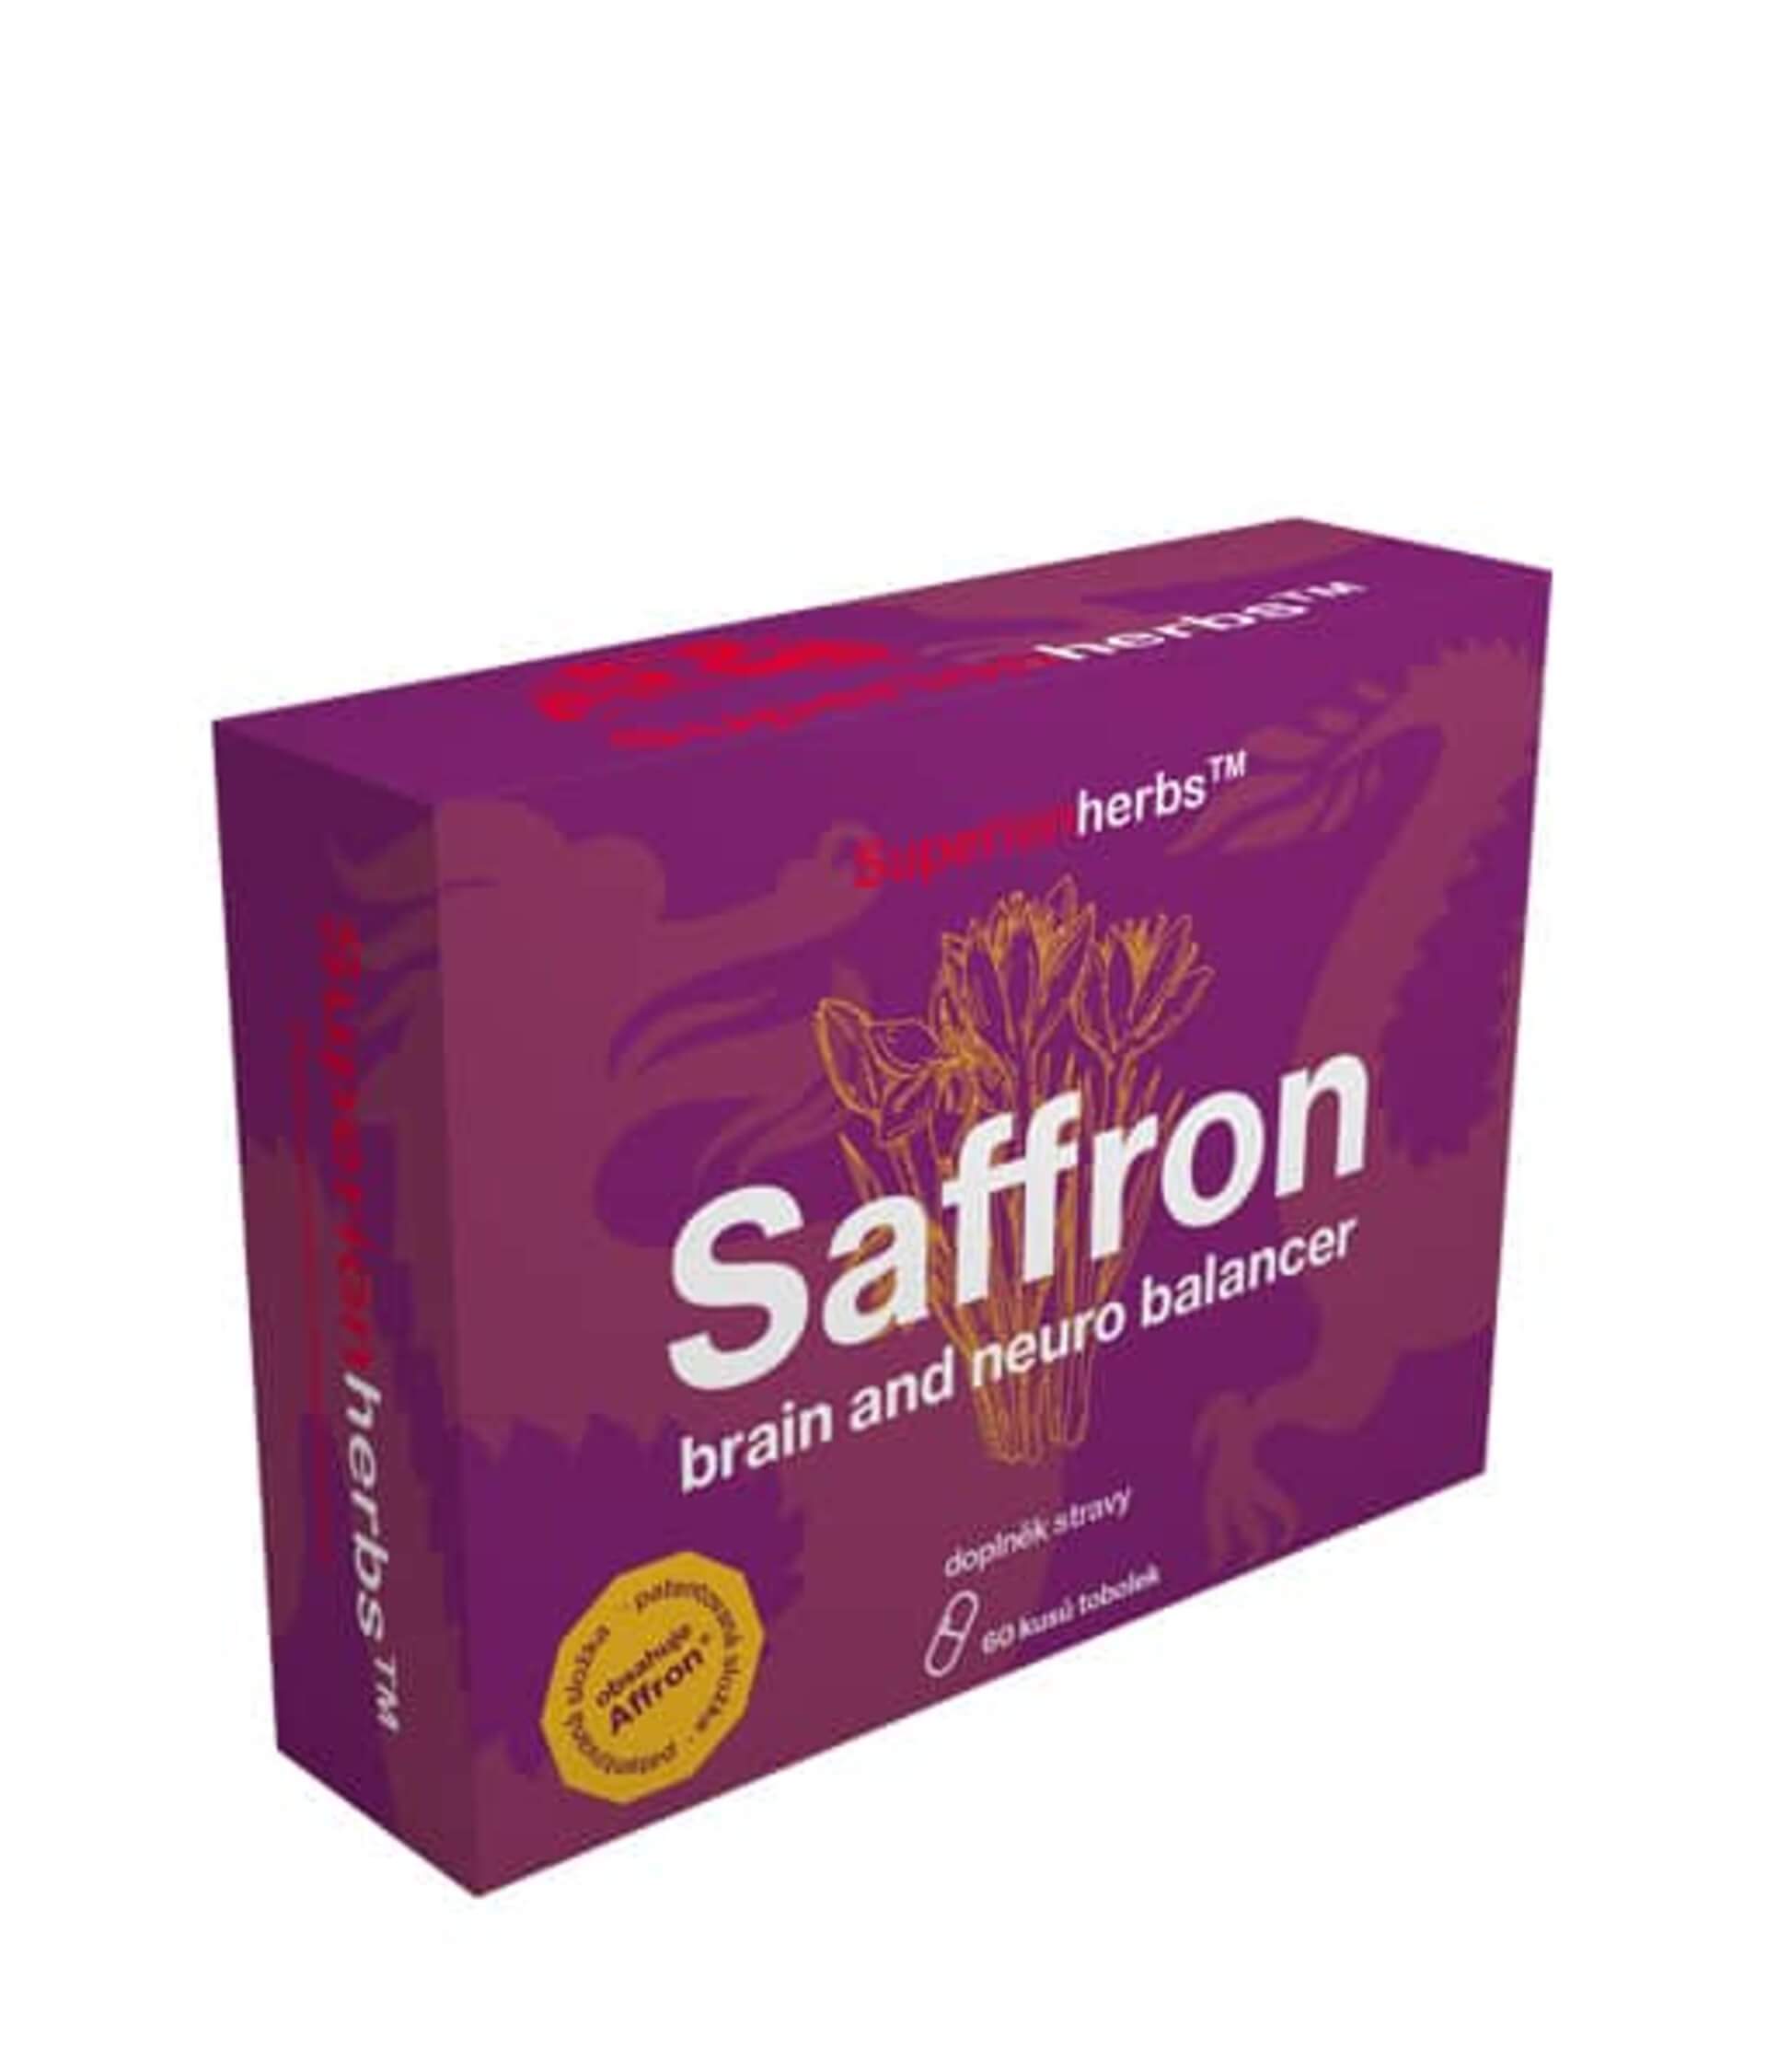 Levně Superionherbs Saffron, brain and neuro balancer 60 kapslí